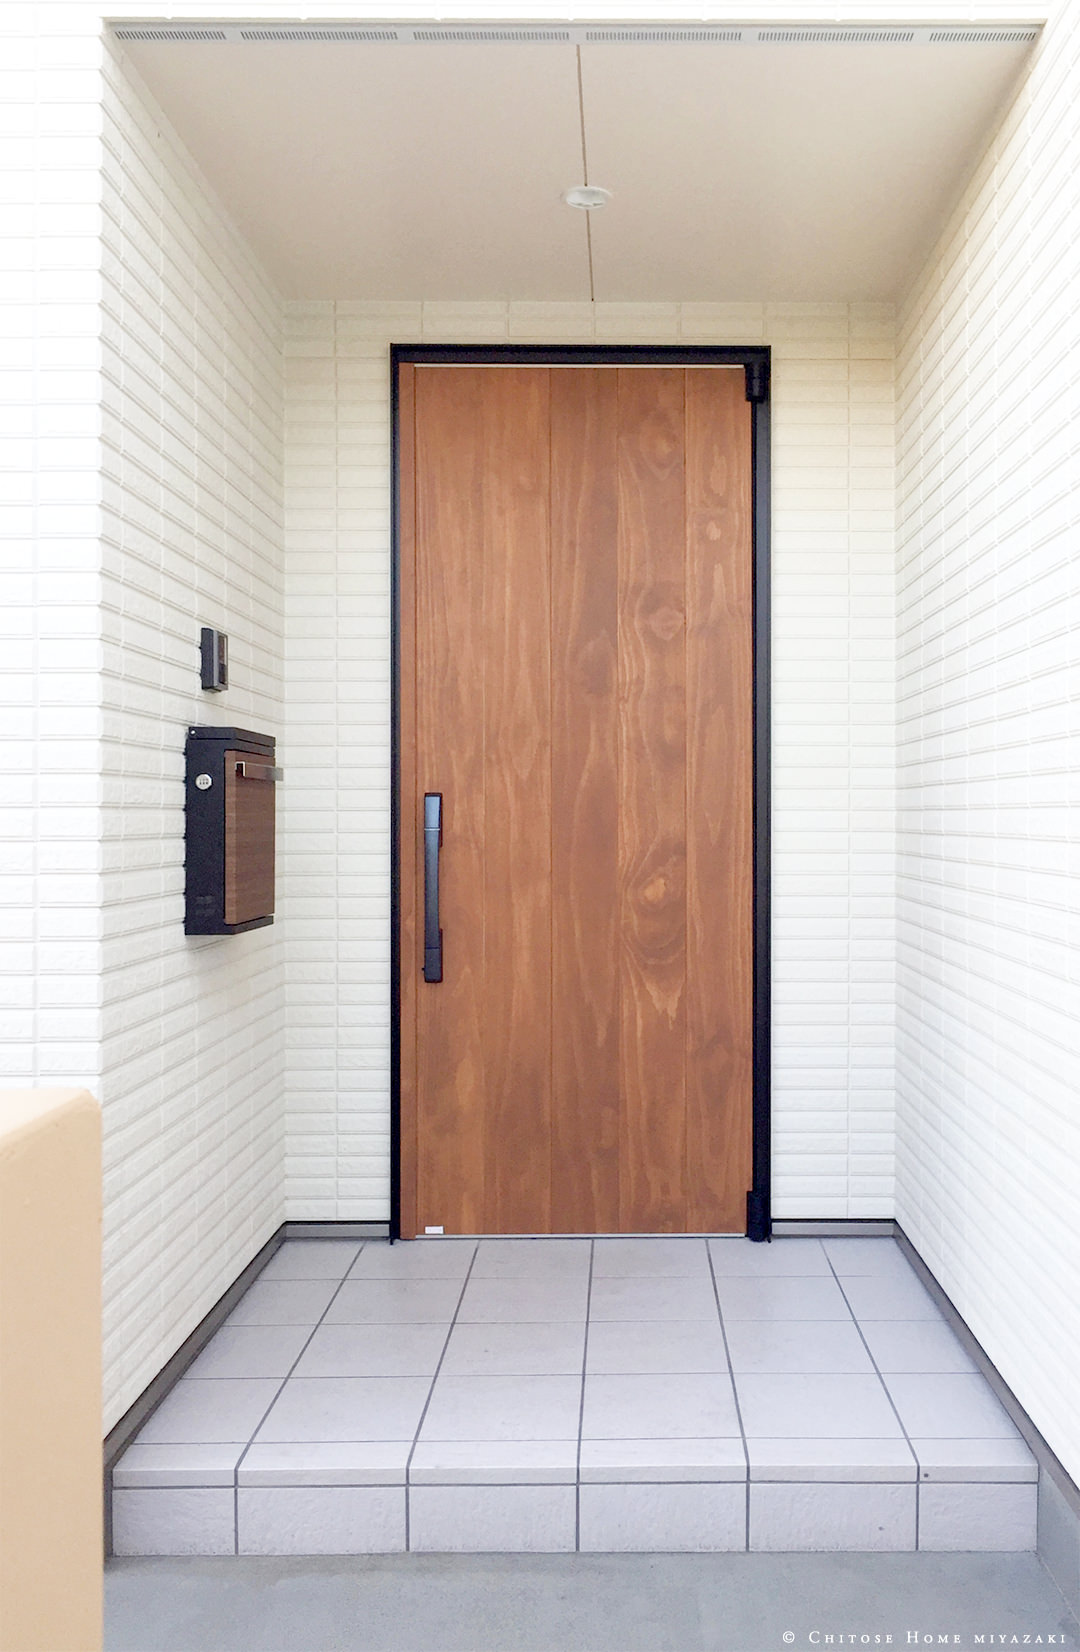 YKKの木製玄関ドアを採用。後々のメンテナンス性を考慮し、主要フレーム部分はアルミとスチール。手入れ可能なパネル部分に、自然塗料でマットに仕上げた木製パネルを組み合わせたドア。